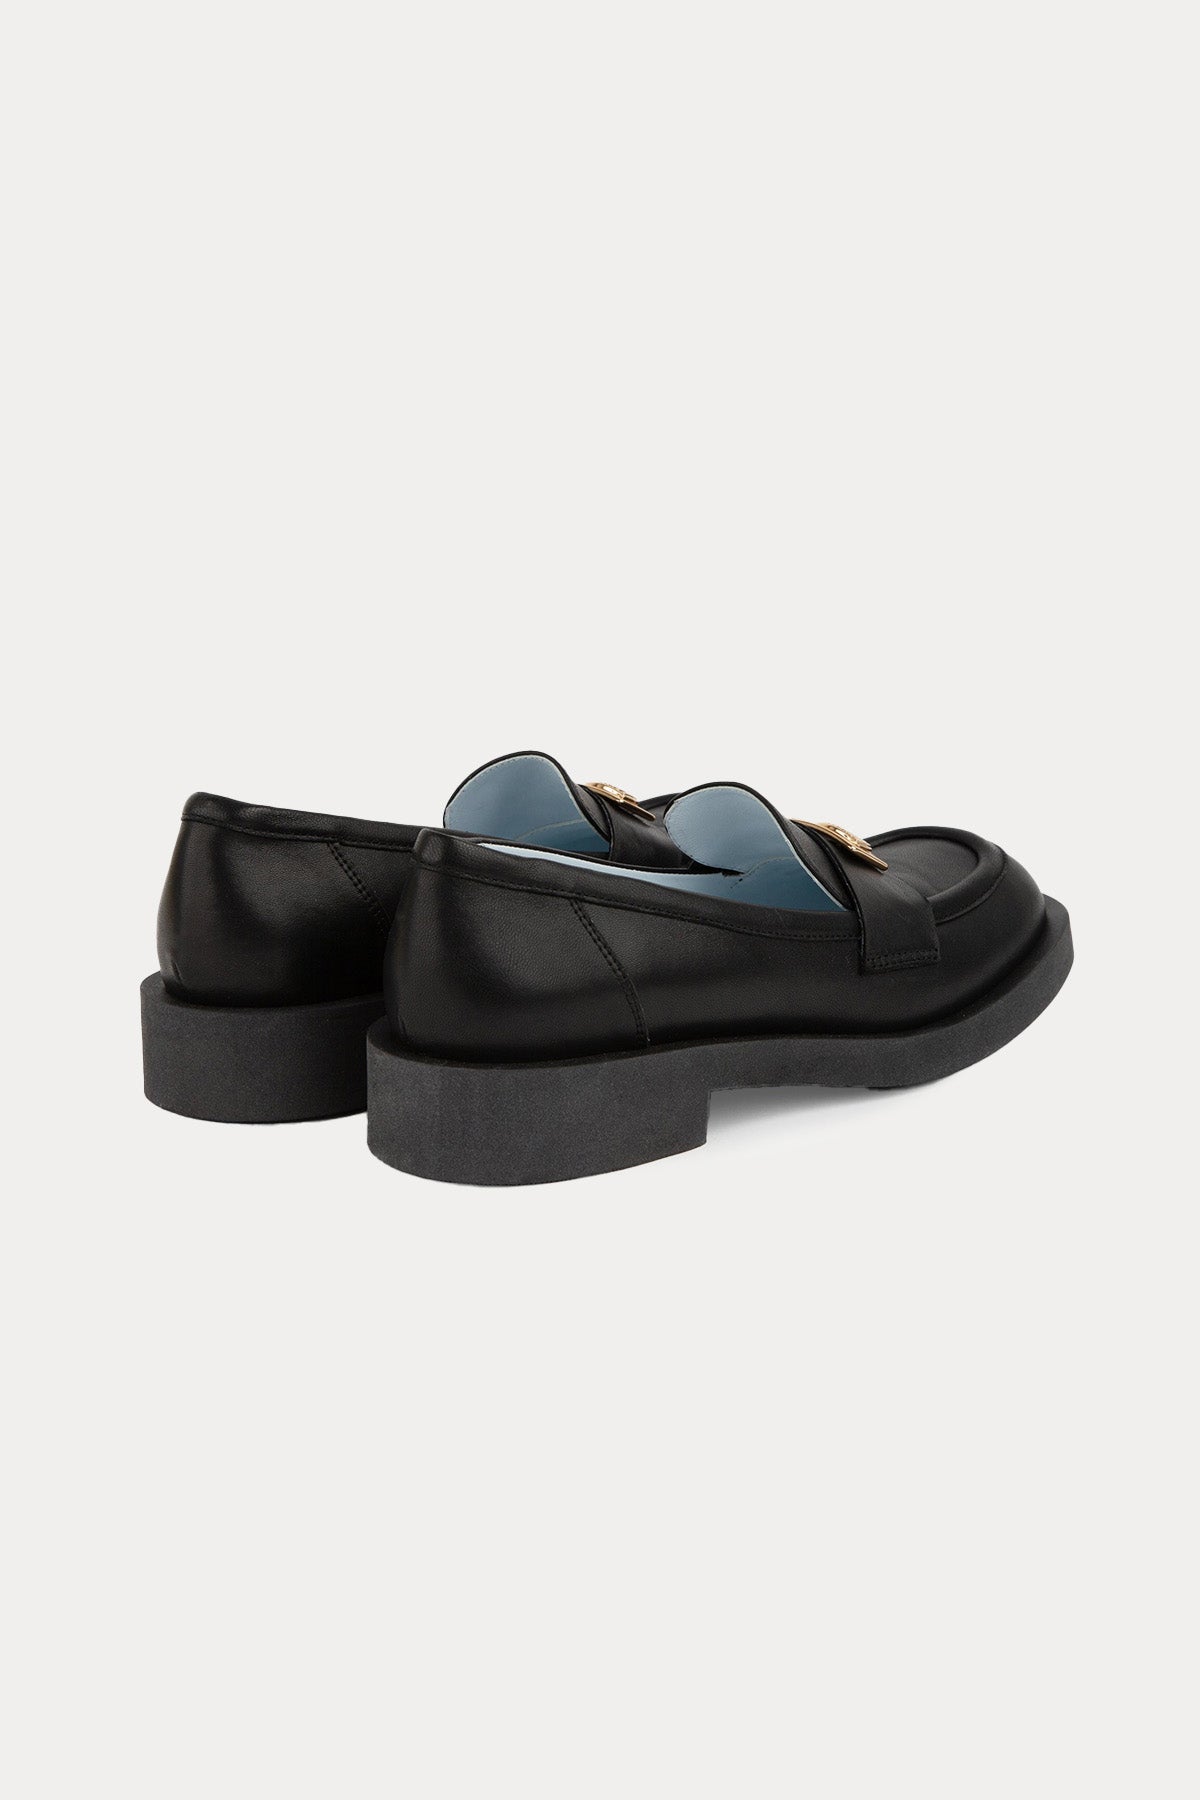 Chiara Ferragni Göz Logolu Küt Burunlu Deri Loafer Ayakkabı-Libas Trendy Fashion Store